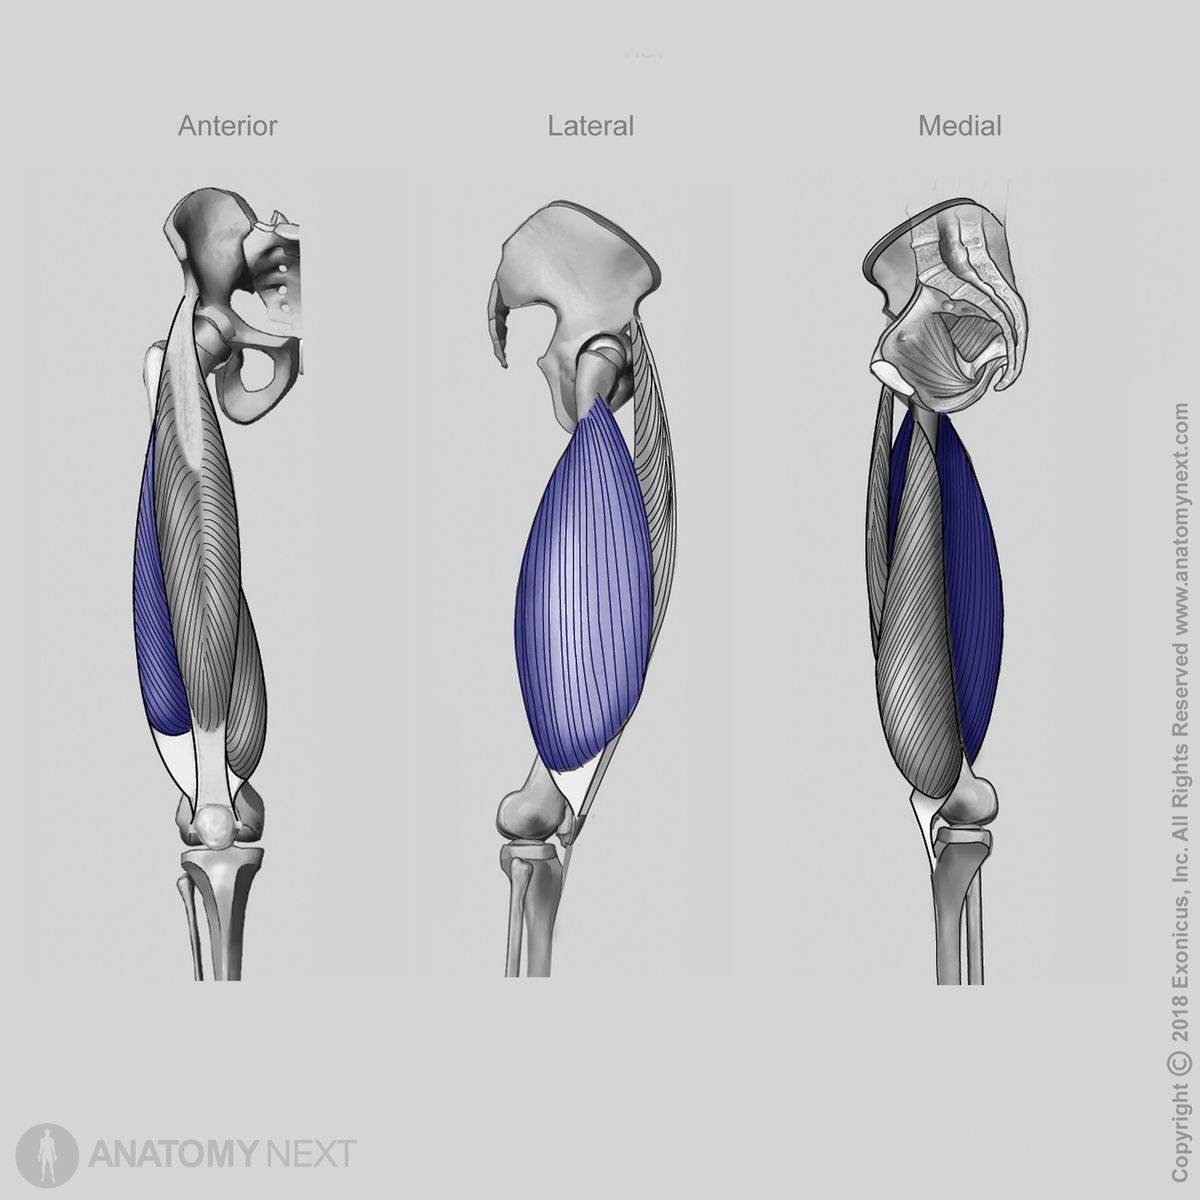 Vastus lateralis, Quadriceps femoris, Anterior view of vastus lateralis, Lateral view of vastus lateralis, Medial view of vastus lateralis, Thigh muscles, Anterior compartment of thigh, Anterior compartment muscles, Human thigh